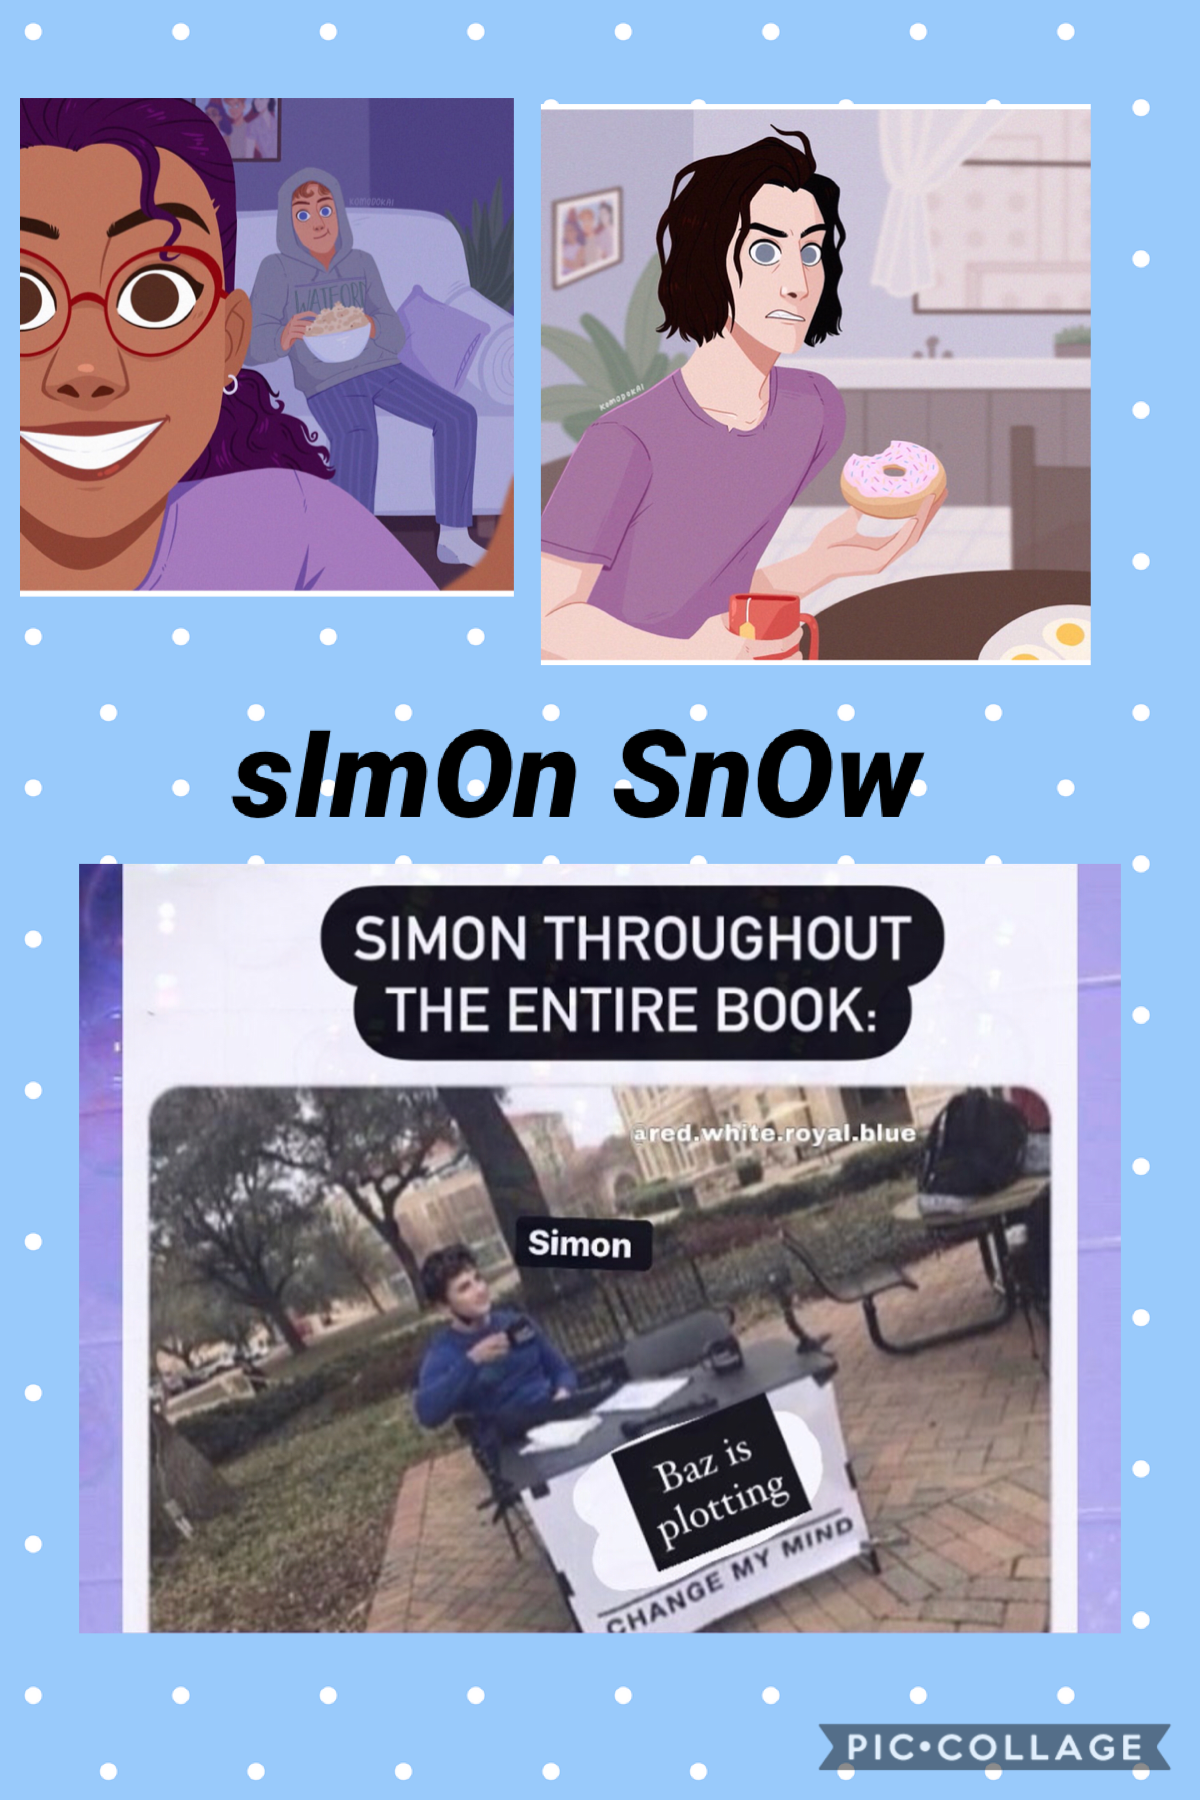 Simons snow 